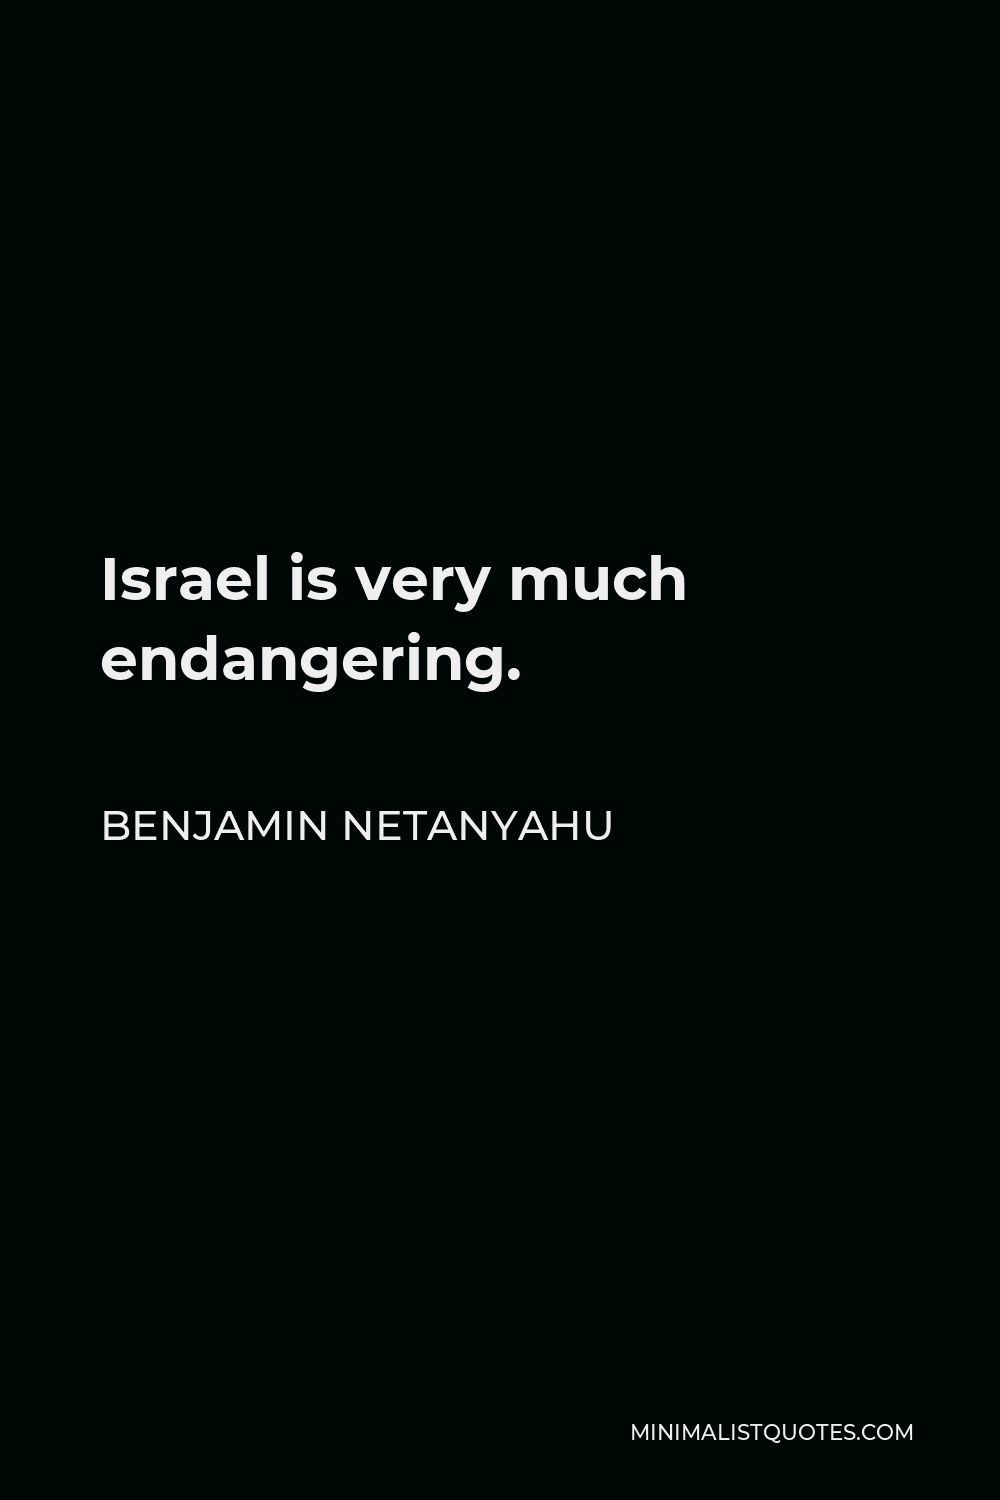 Benjamin Netanyahu Quote - Israel is very much endangering.